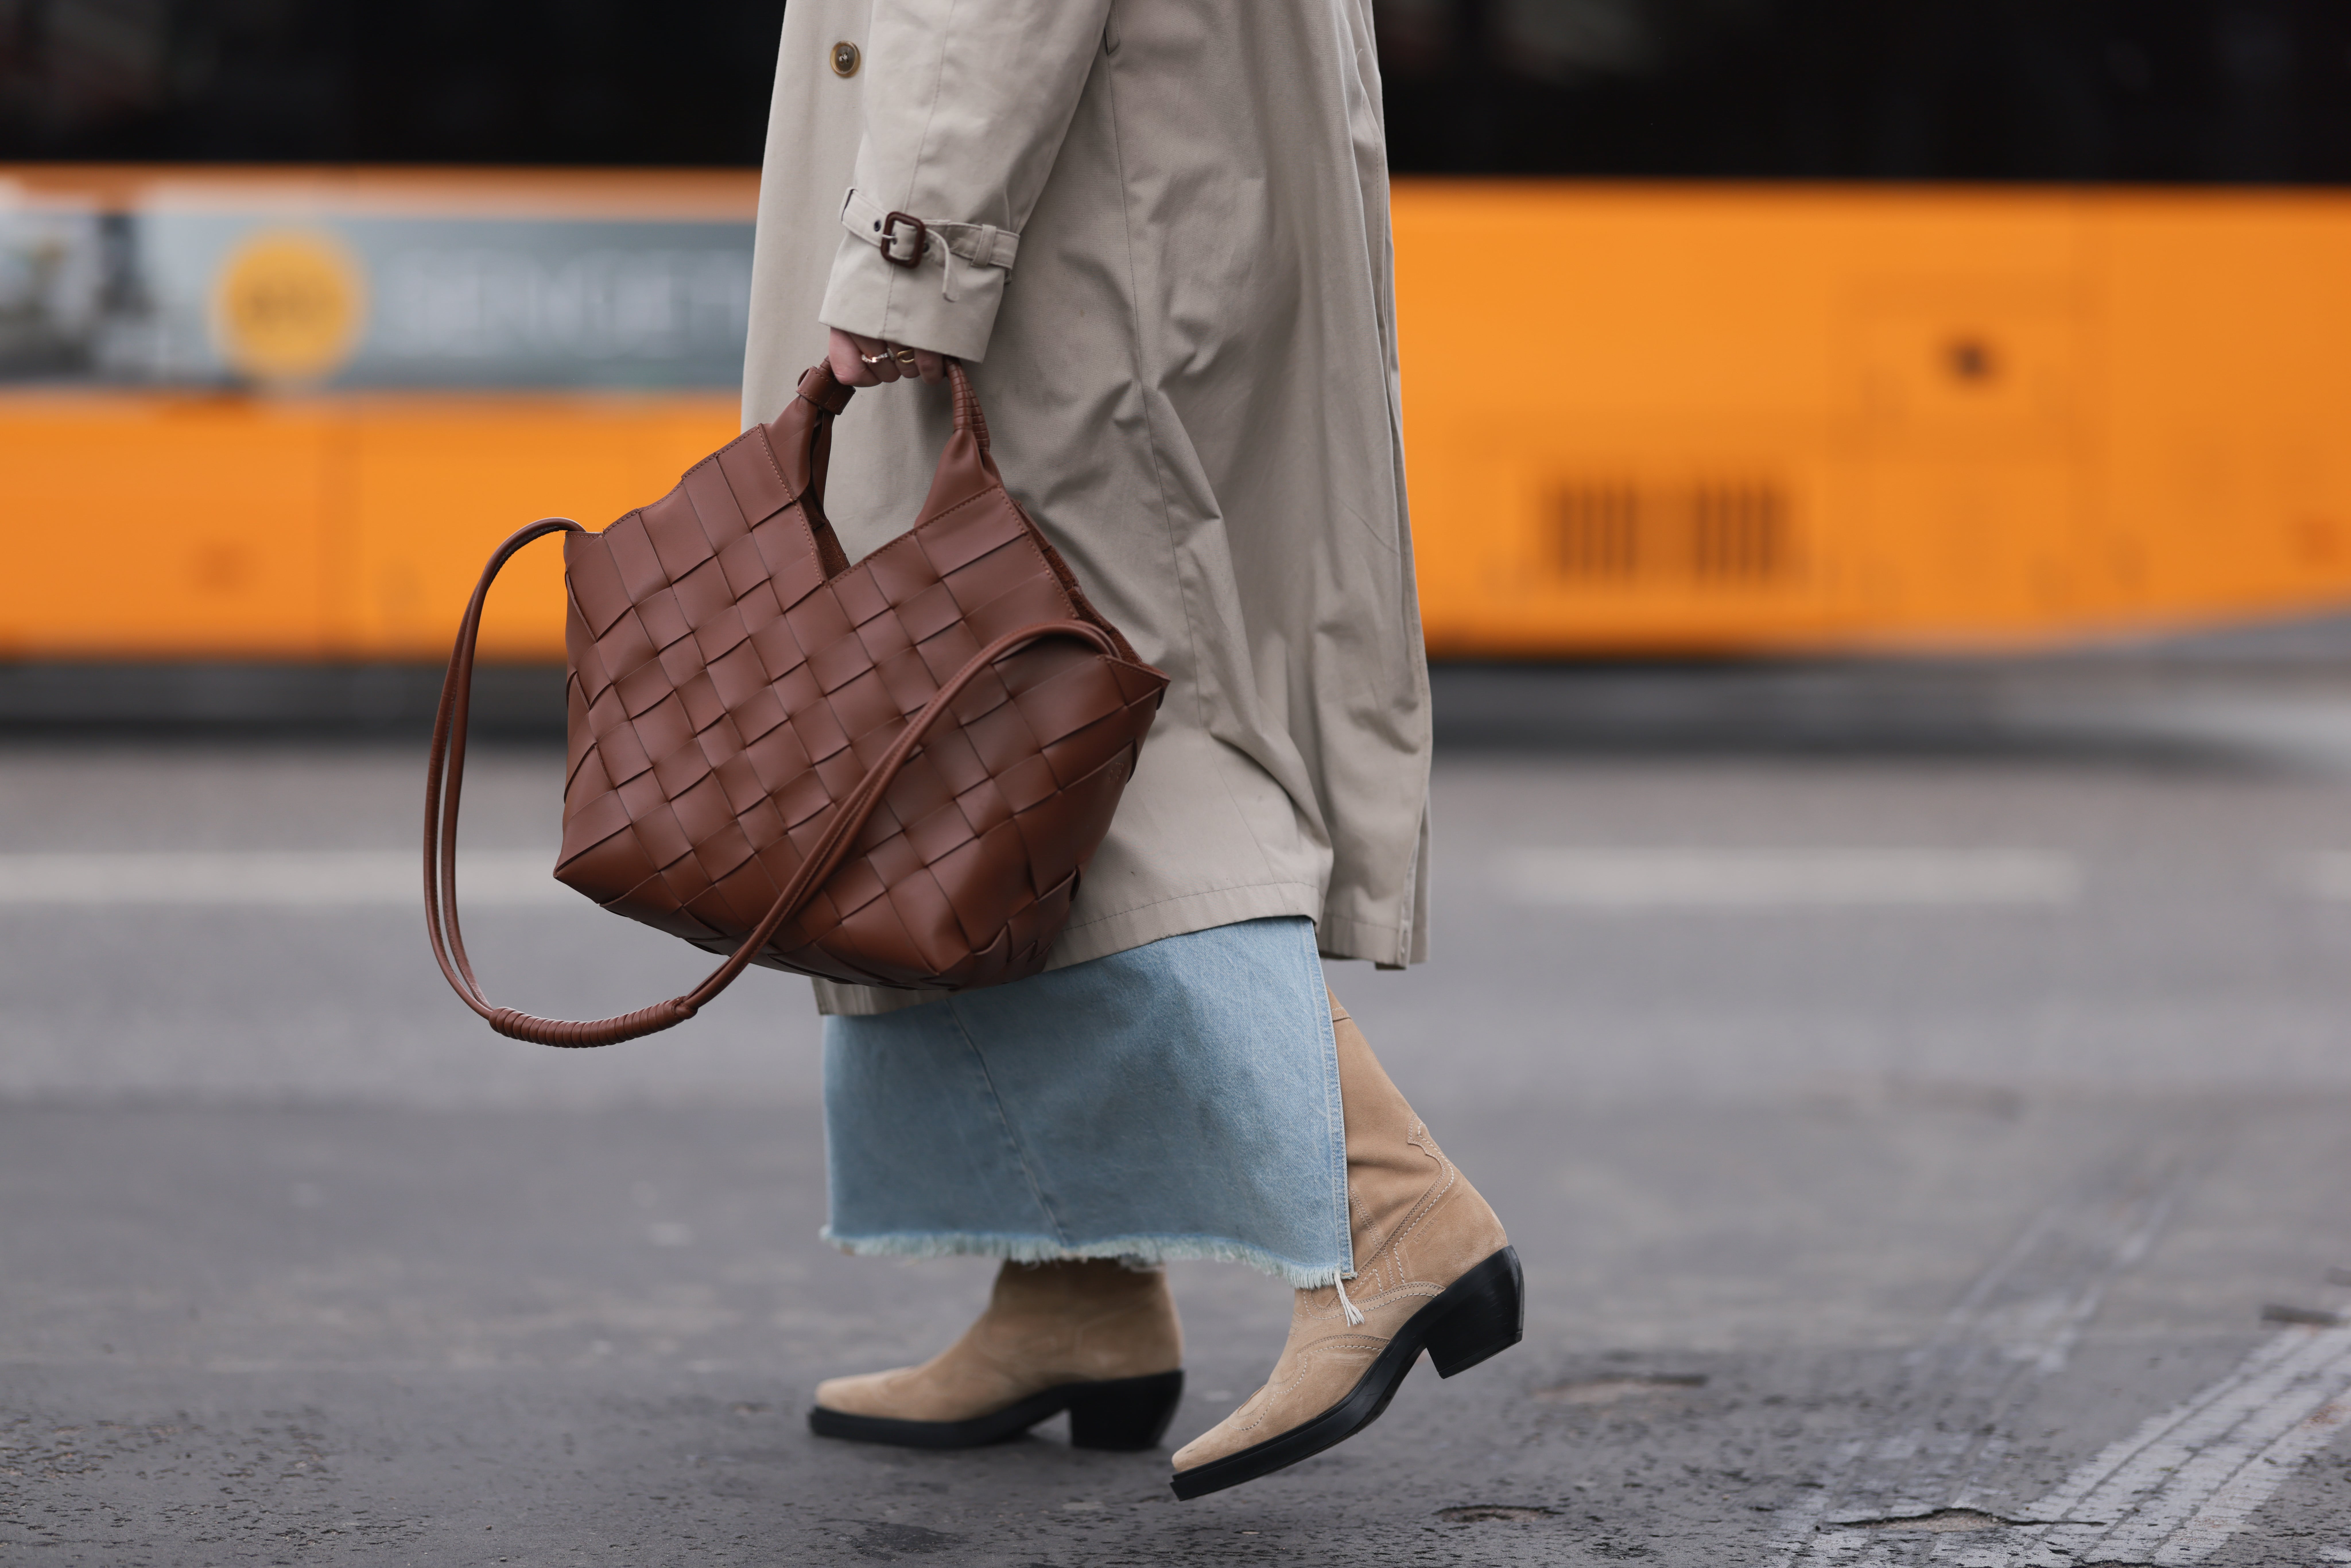 BOSTANTEN Women Leather Handbags Top Handle Satchel Purses Medium